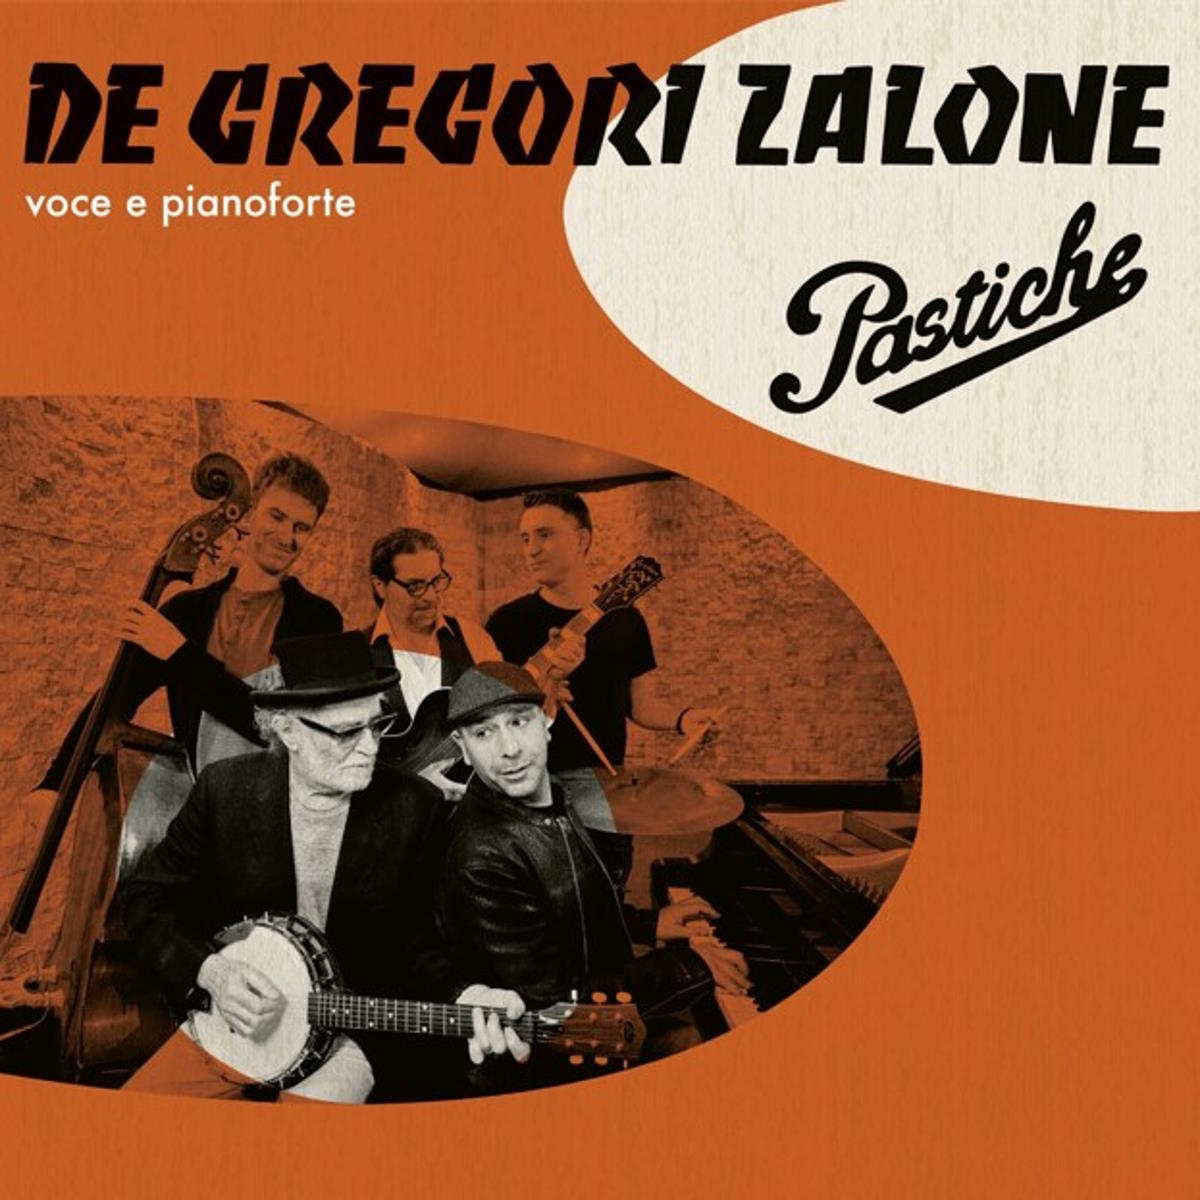 De Gregori - Zalone: disponibile, in digitale ed in rotazione radiofonica, “Giusto O Sbagliato”, il singolo inedito che anticipa l’album “Pastiche”, in uscita il 12 aprile